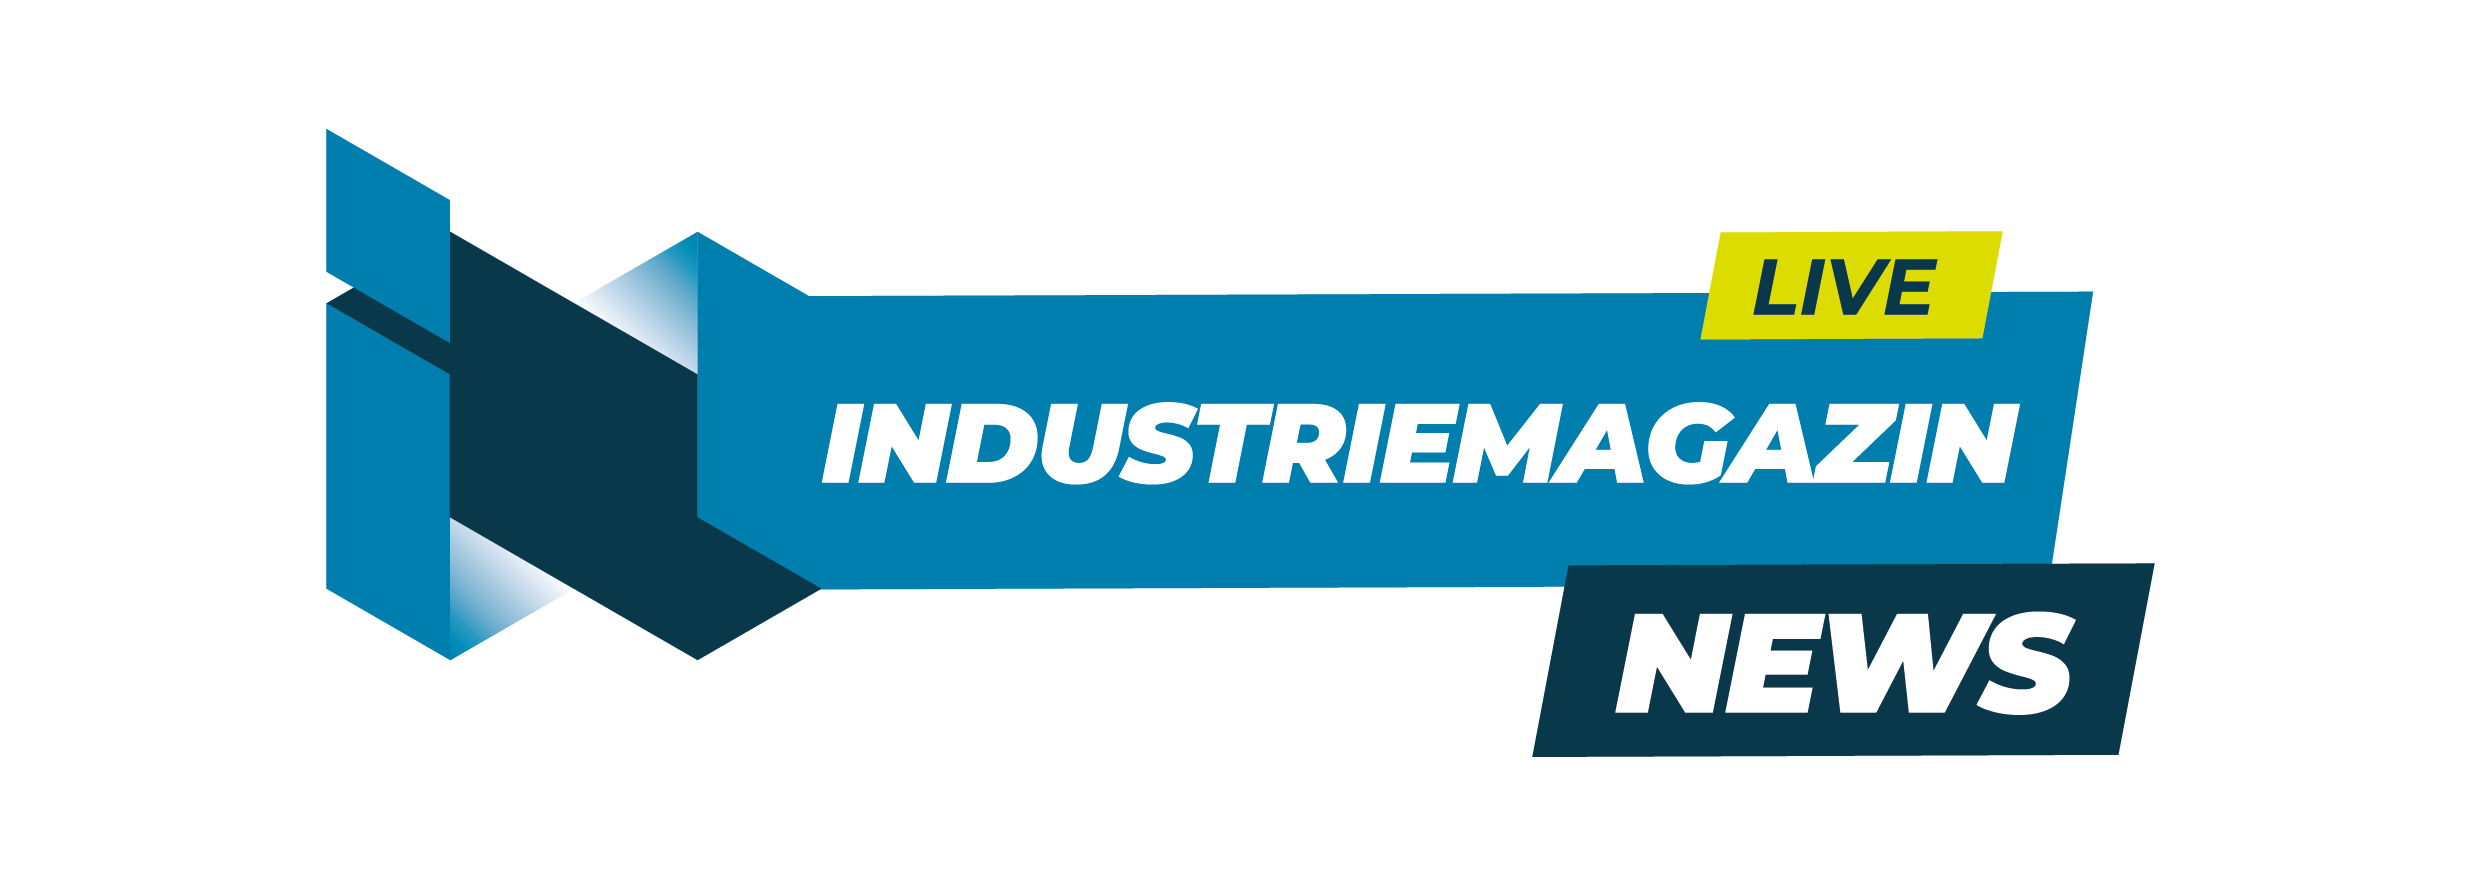 Logotipo de la revista Industry Magazine News